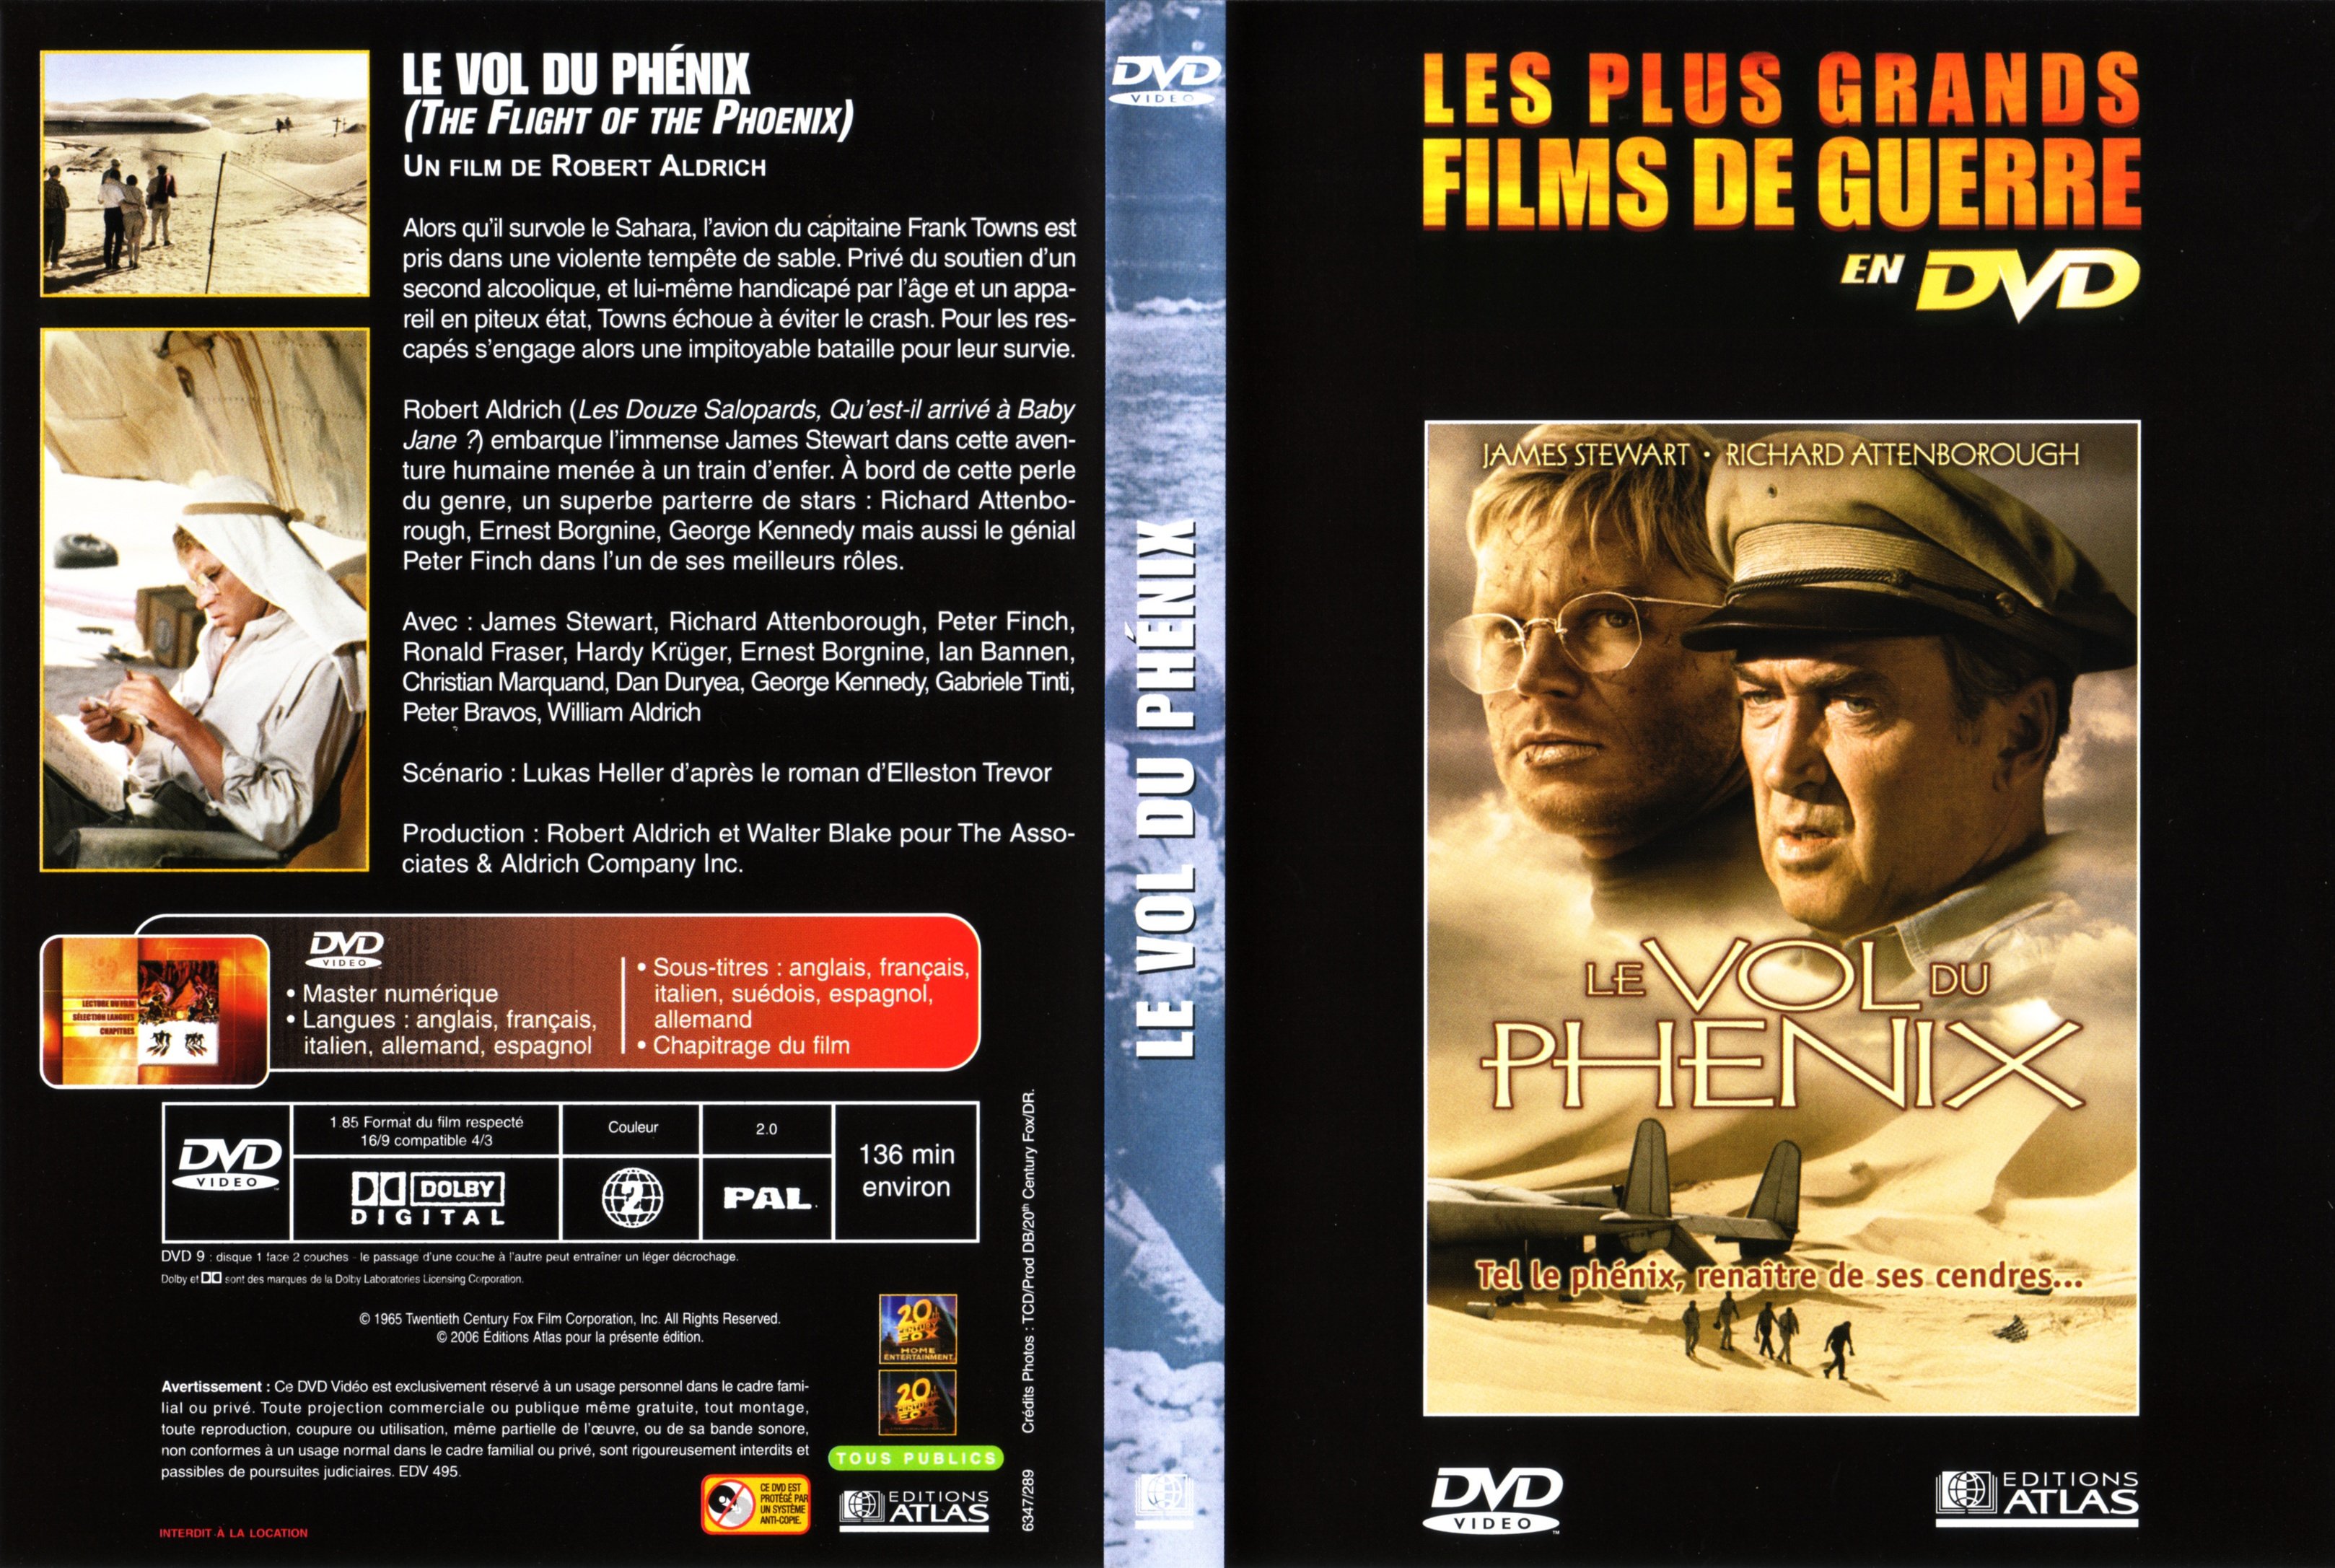 Jaquette DVD Le vol du phenix (1965) v2